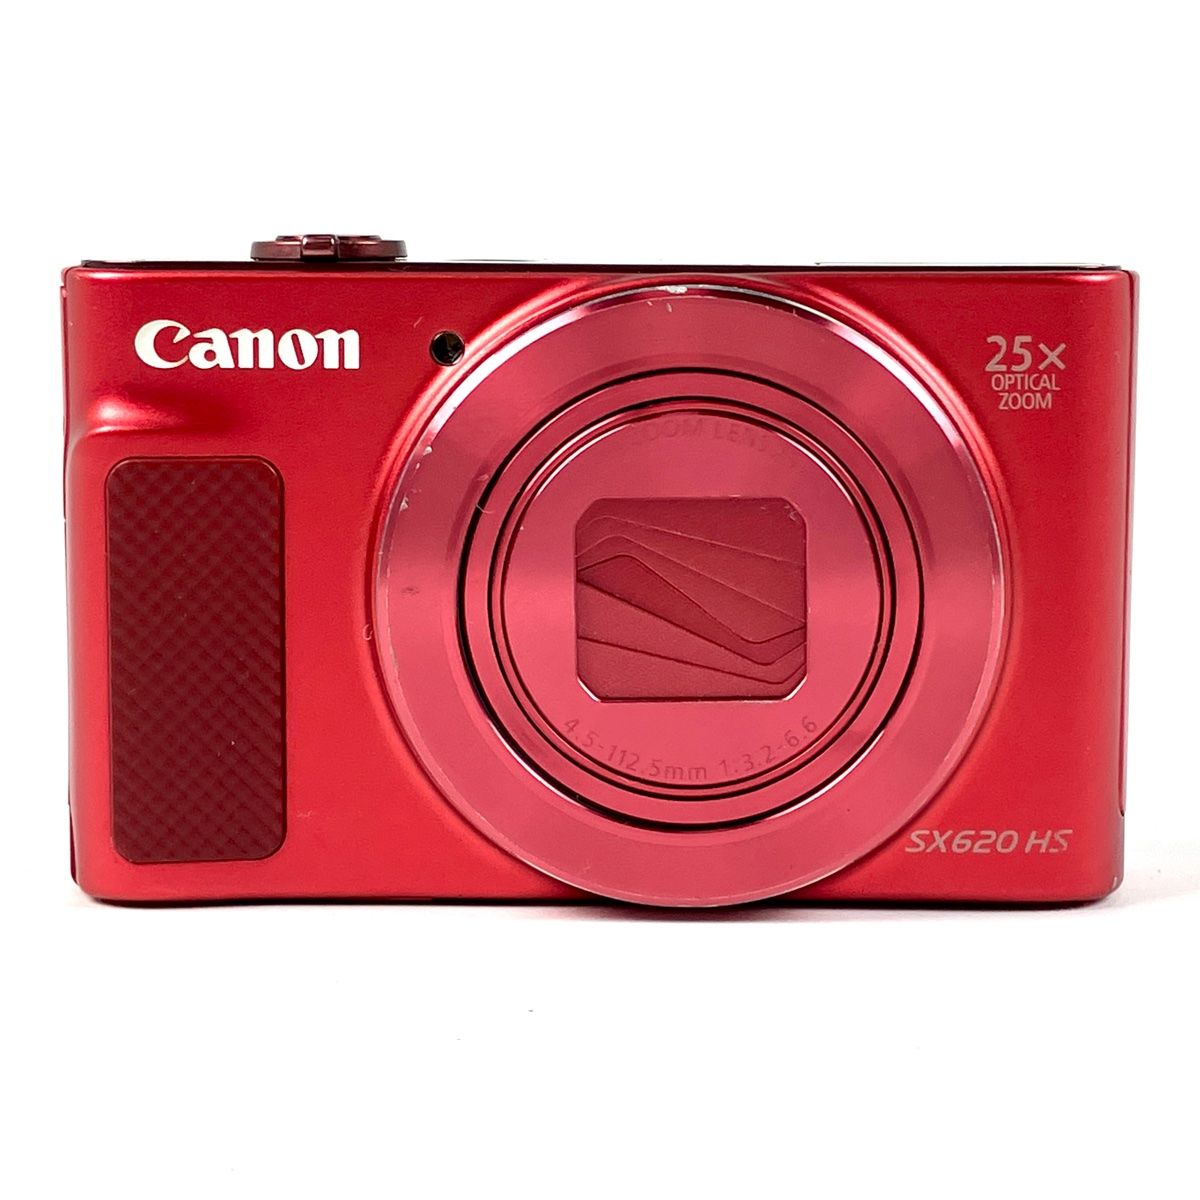 キヤノン Canon PowerShot SX620 HS レッド 赤 コンパクトデジタルカメラ 【中古】 バイセル メルカリ店 メルカリ